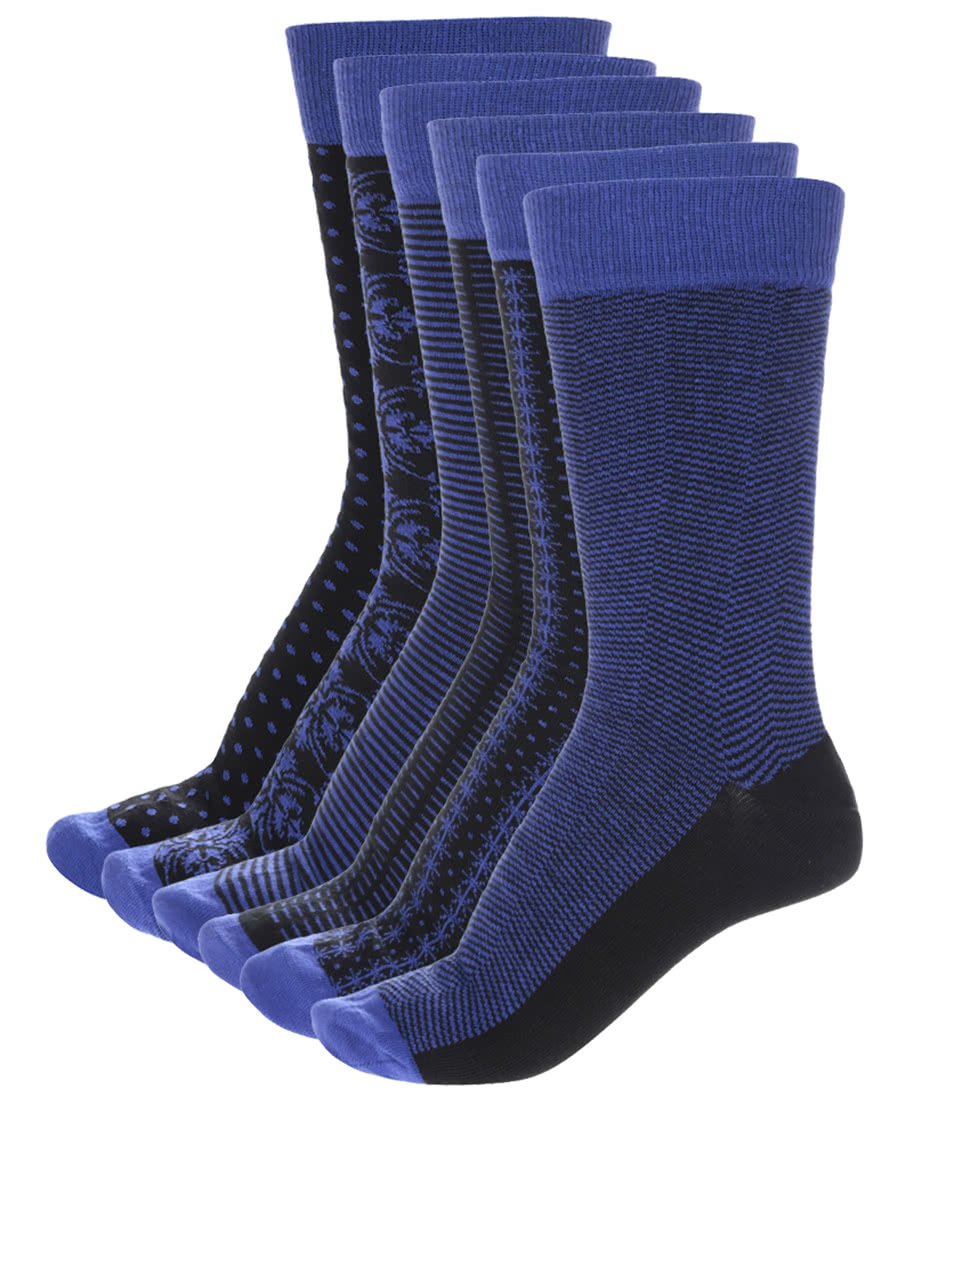 Sada šesti pánských černo-modrých vzorovaných ponožek Oddsocks Suit